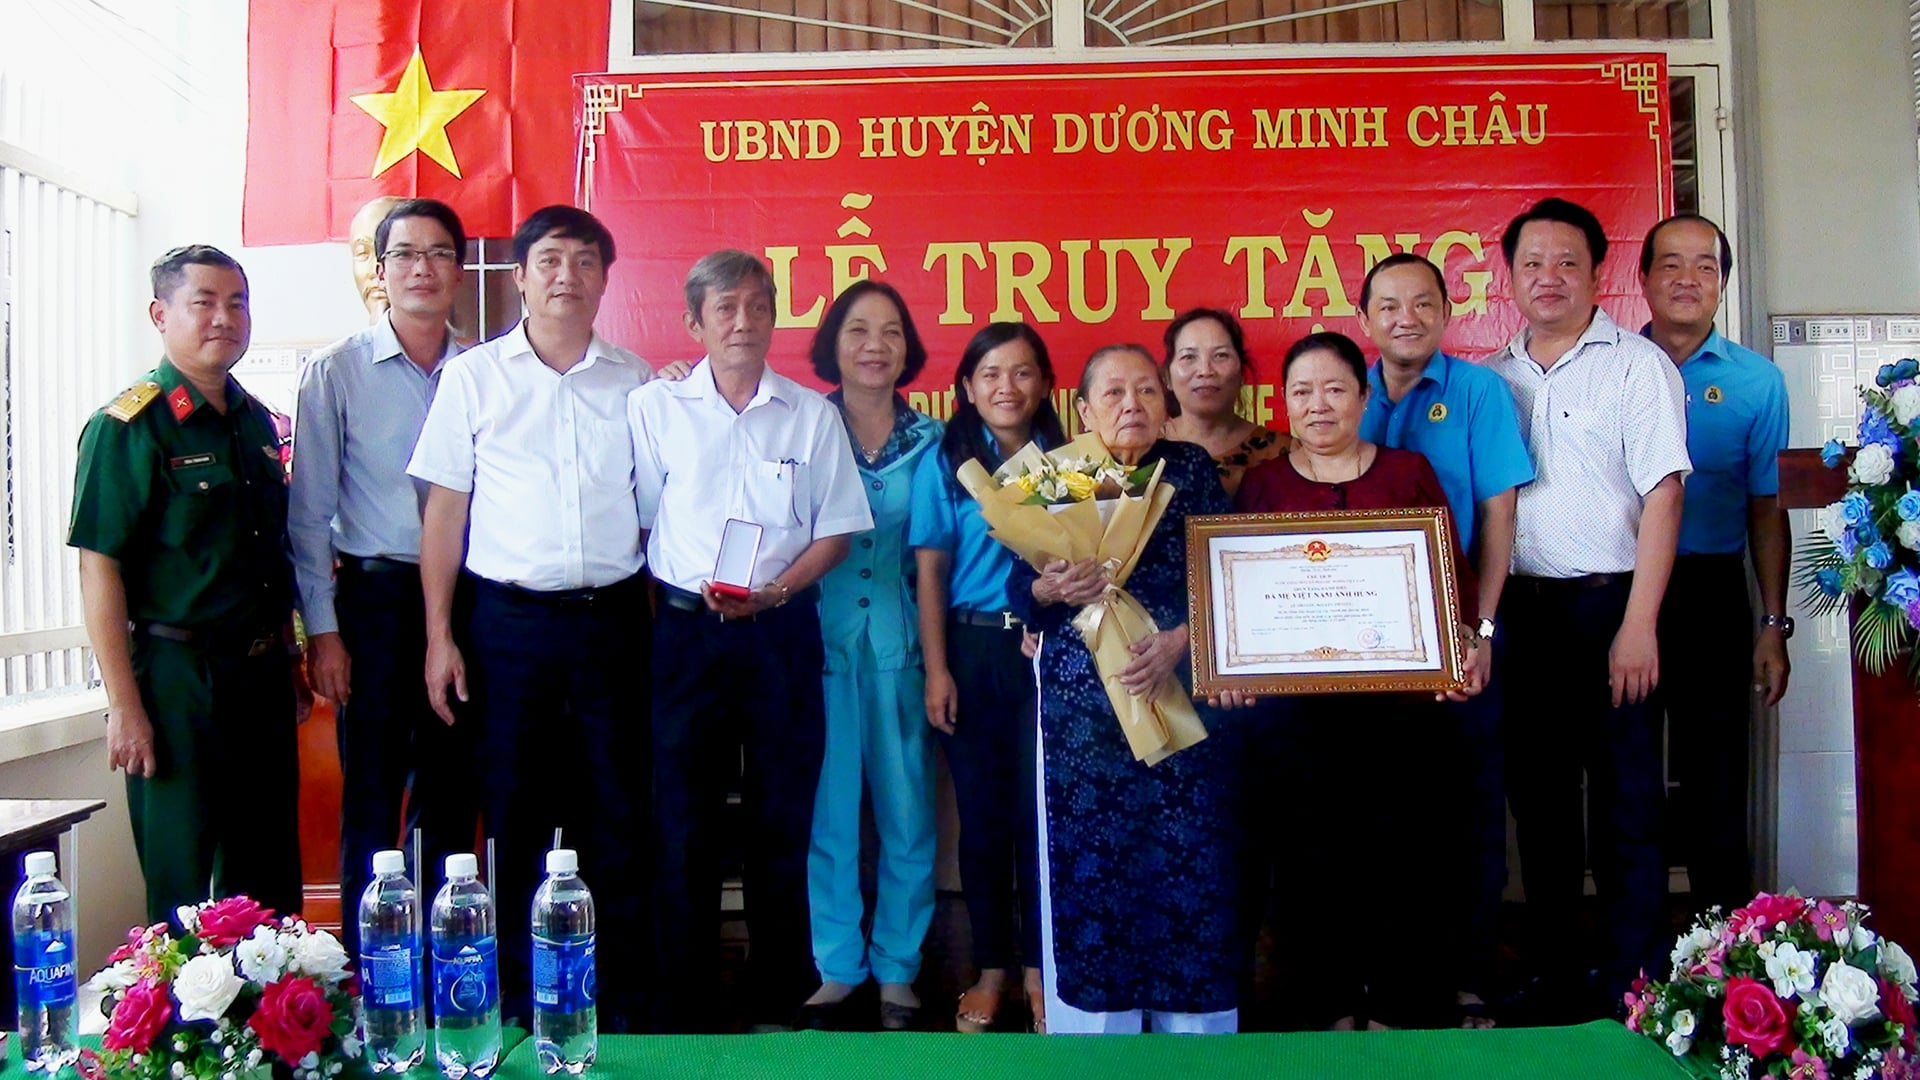 Huyện Dương Minh Châu truy tặng danh hiệu “Bà Mẹ Việt Nam anh hùng”